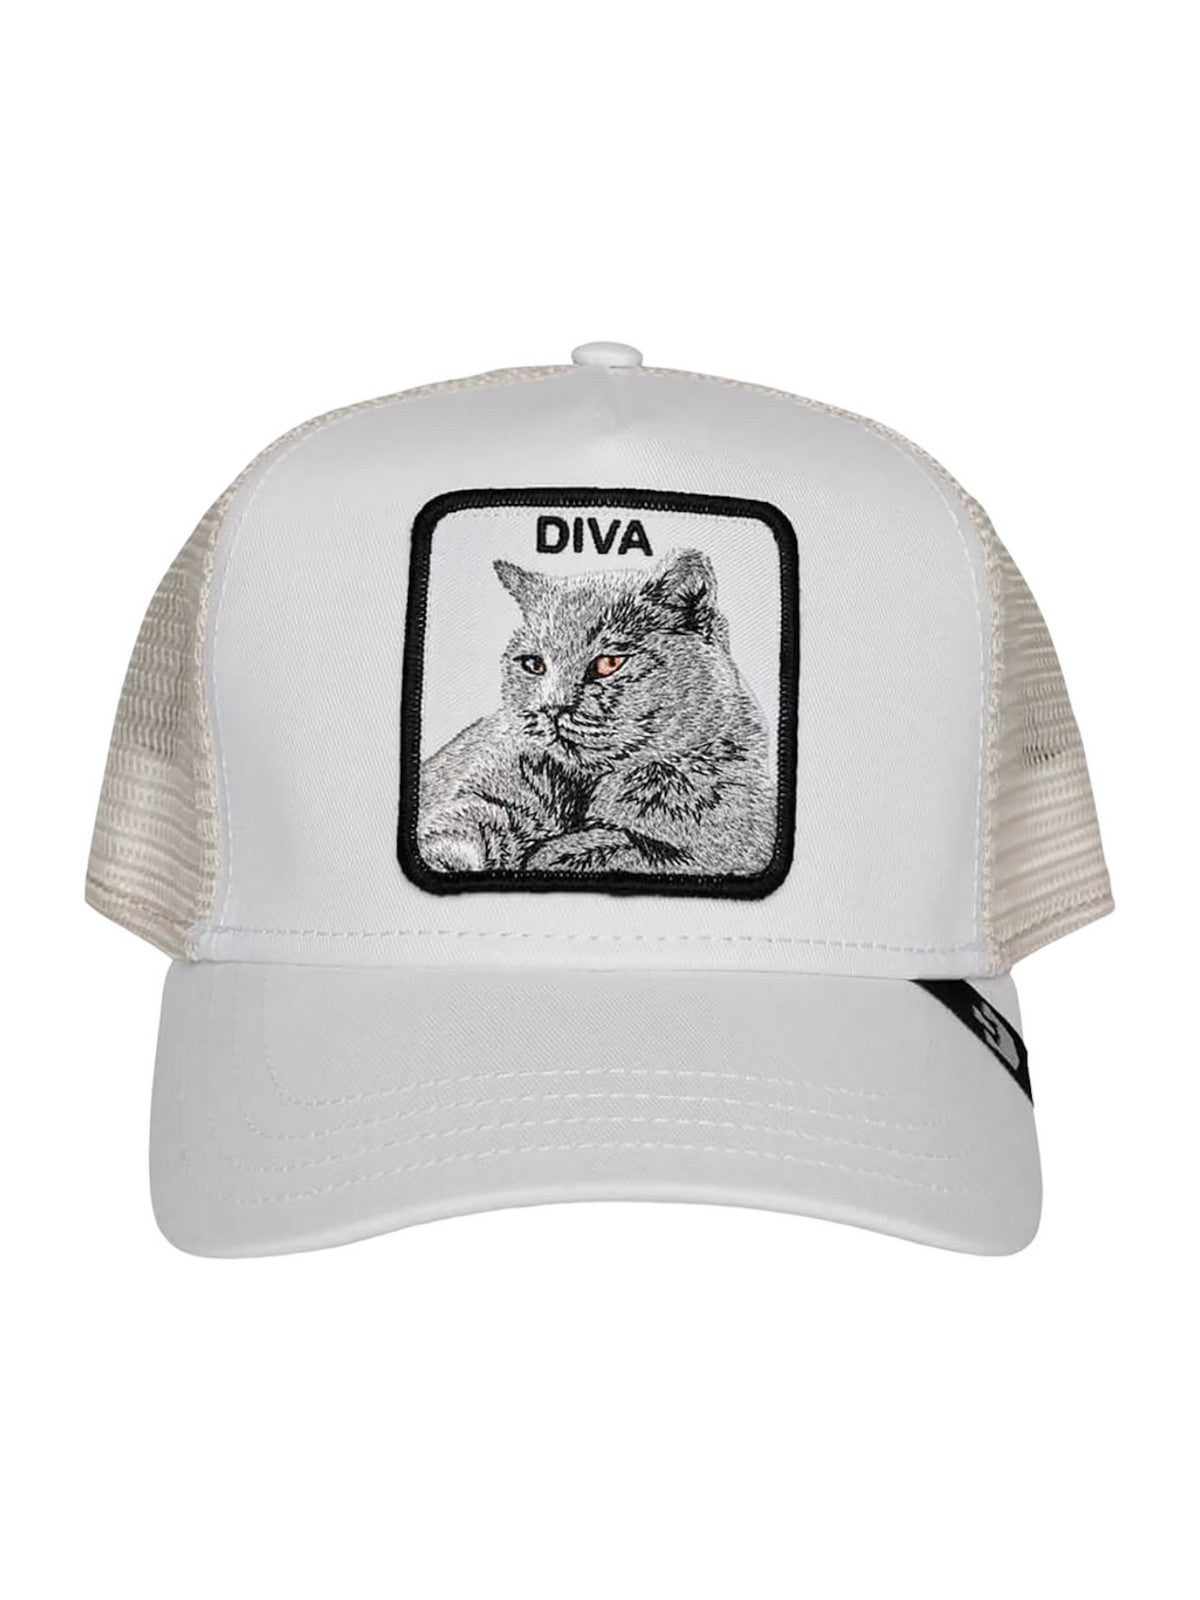 GOORIN BROS Cappello Uomo The diva cat 101-0438-WHI Bianco